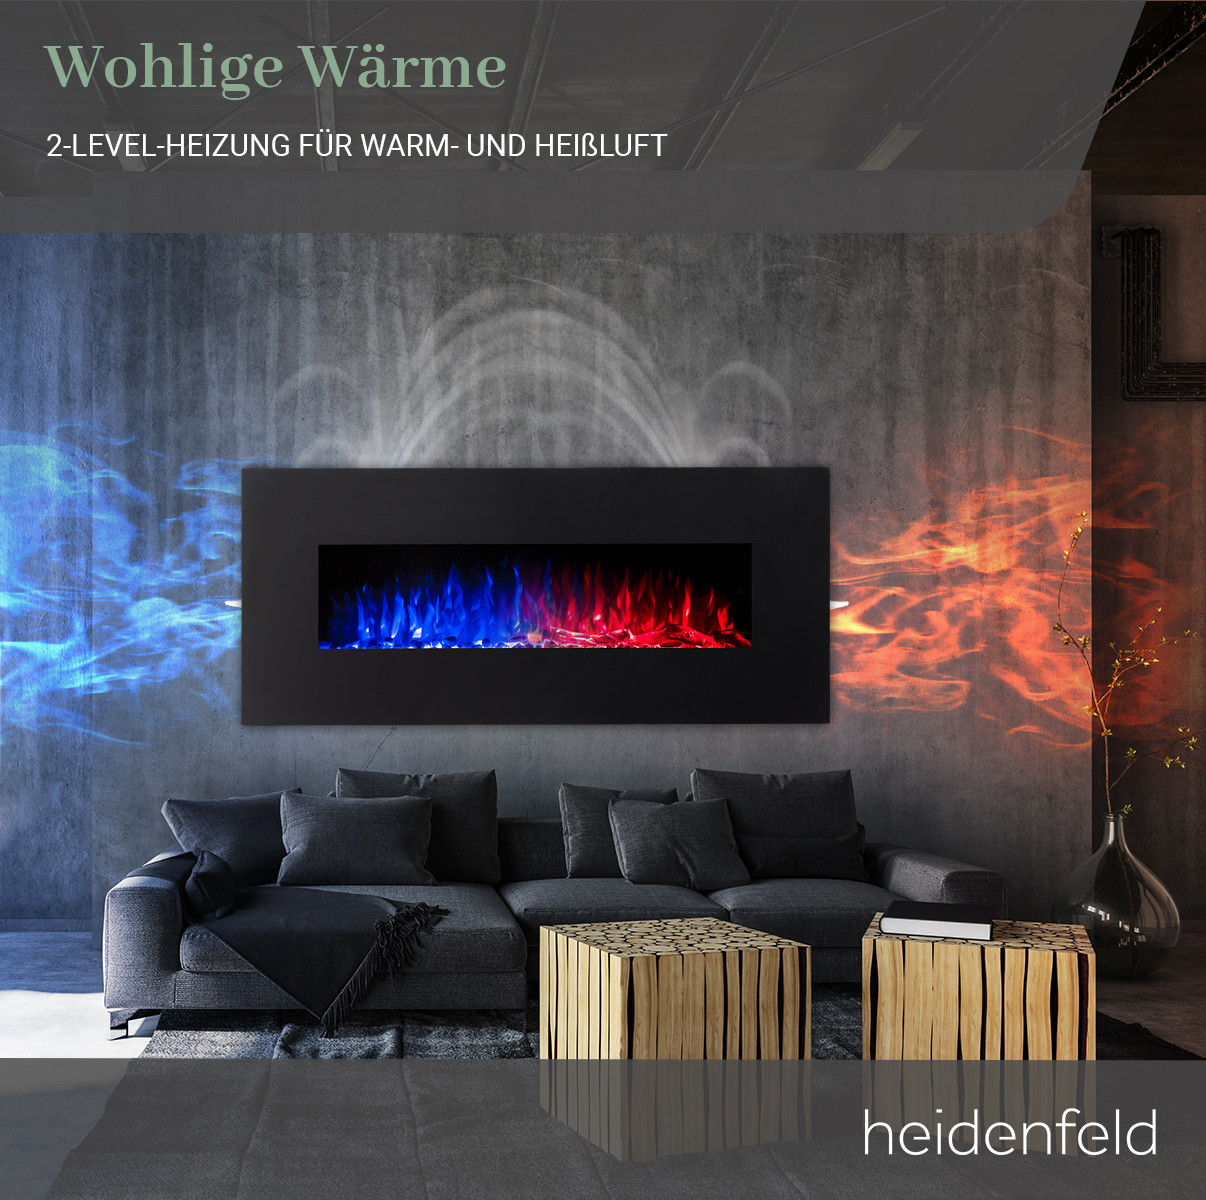 HEIDENFELD x Wandkamin 55.0 (1500 Elektrokamin Watt) 107.0 cm HF-WK300